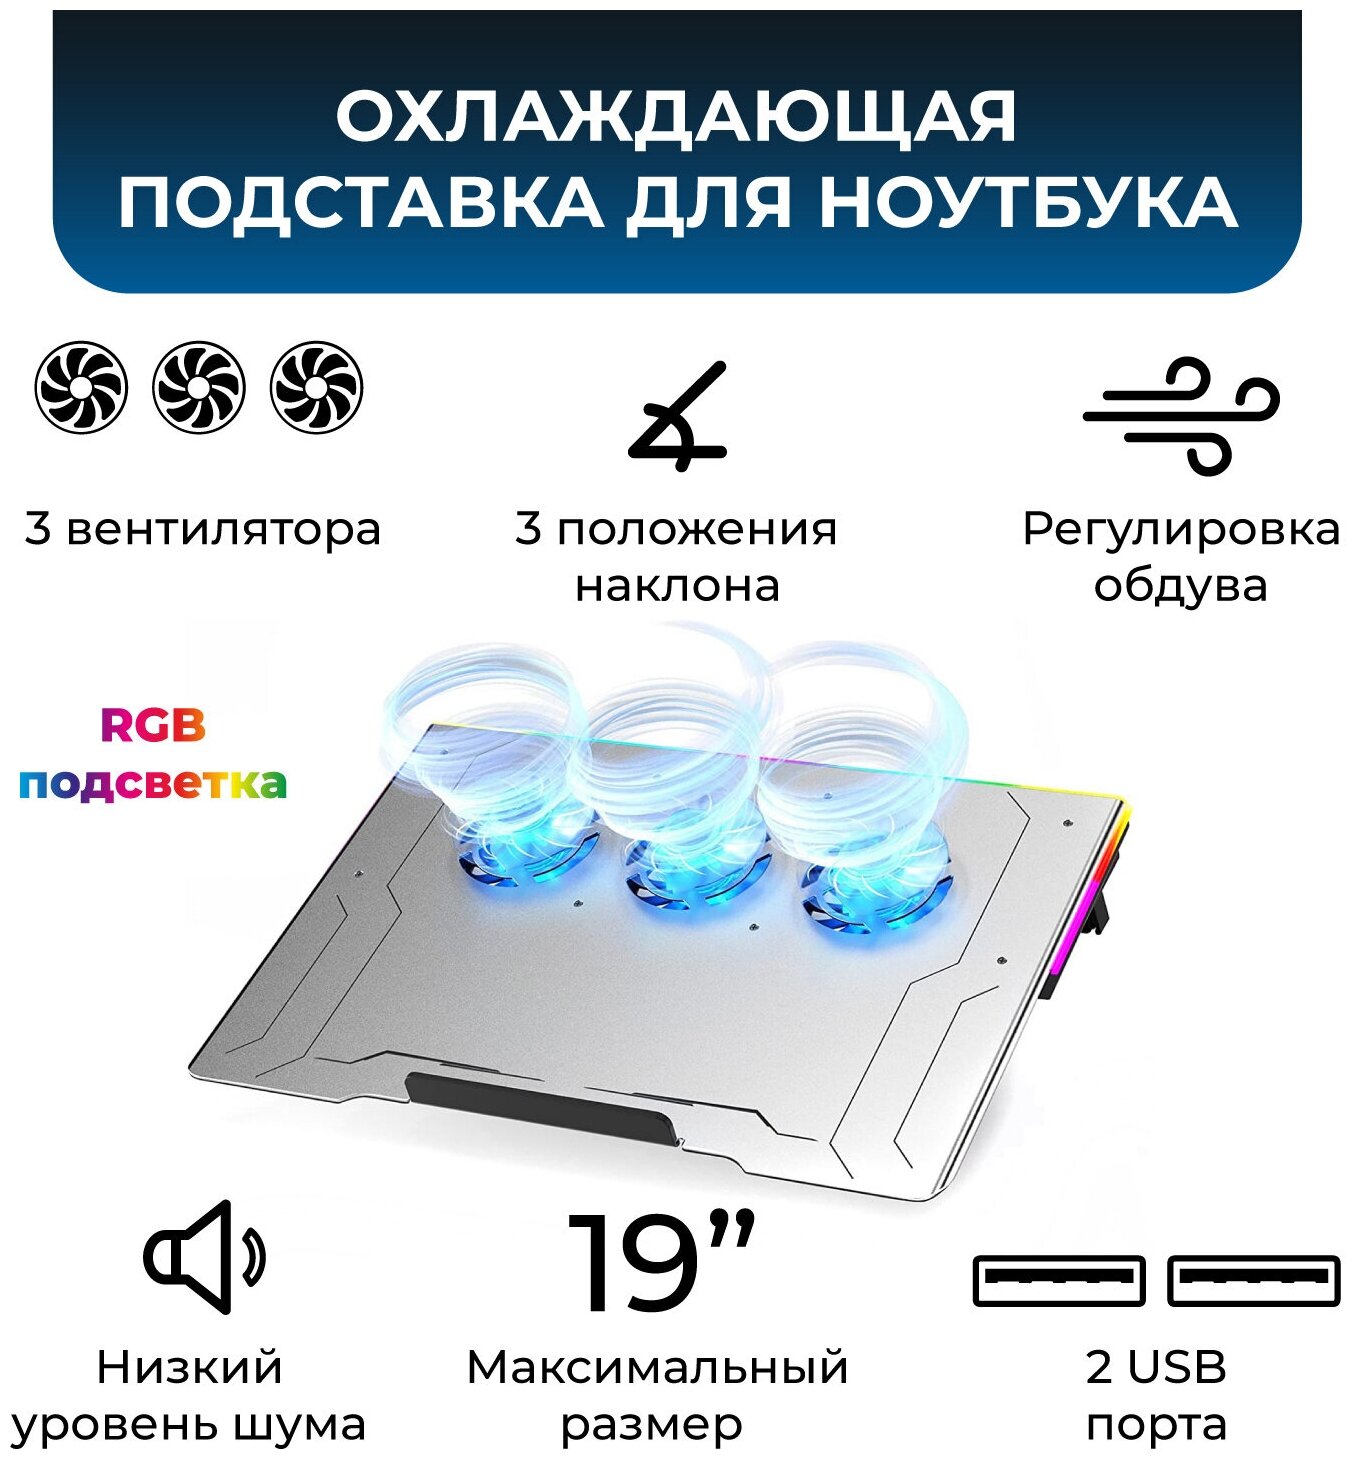 Охлаждающая подставка для ноутбука до 19" 3 вентилятора  2 USB RGB регулировка наклона алюминиевая KS-is